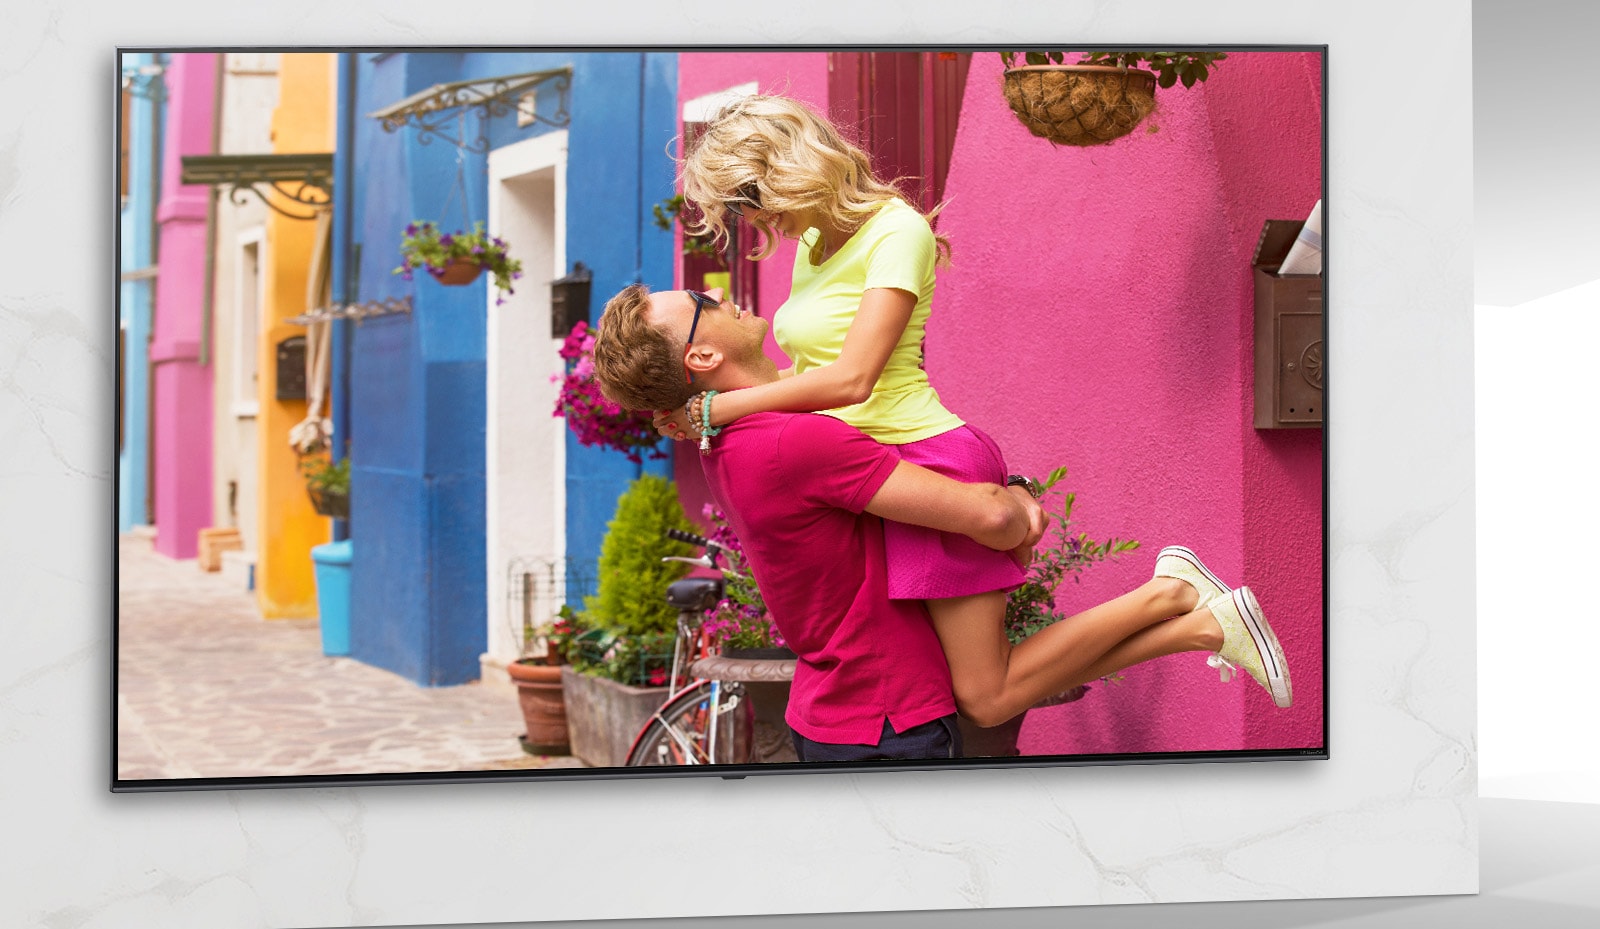 Lo schermo TV mostra una scena di un colorato film romantico in cui uomini e donne si coccolano.